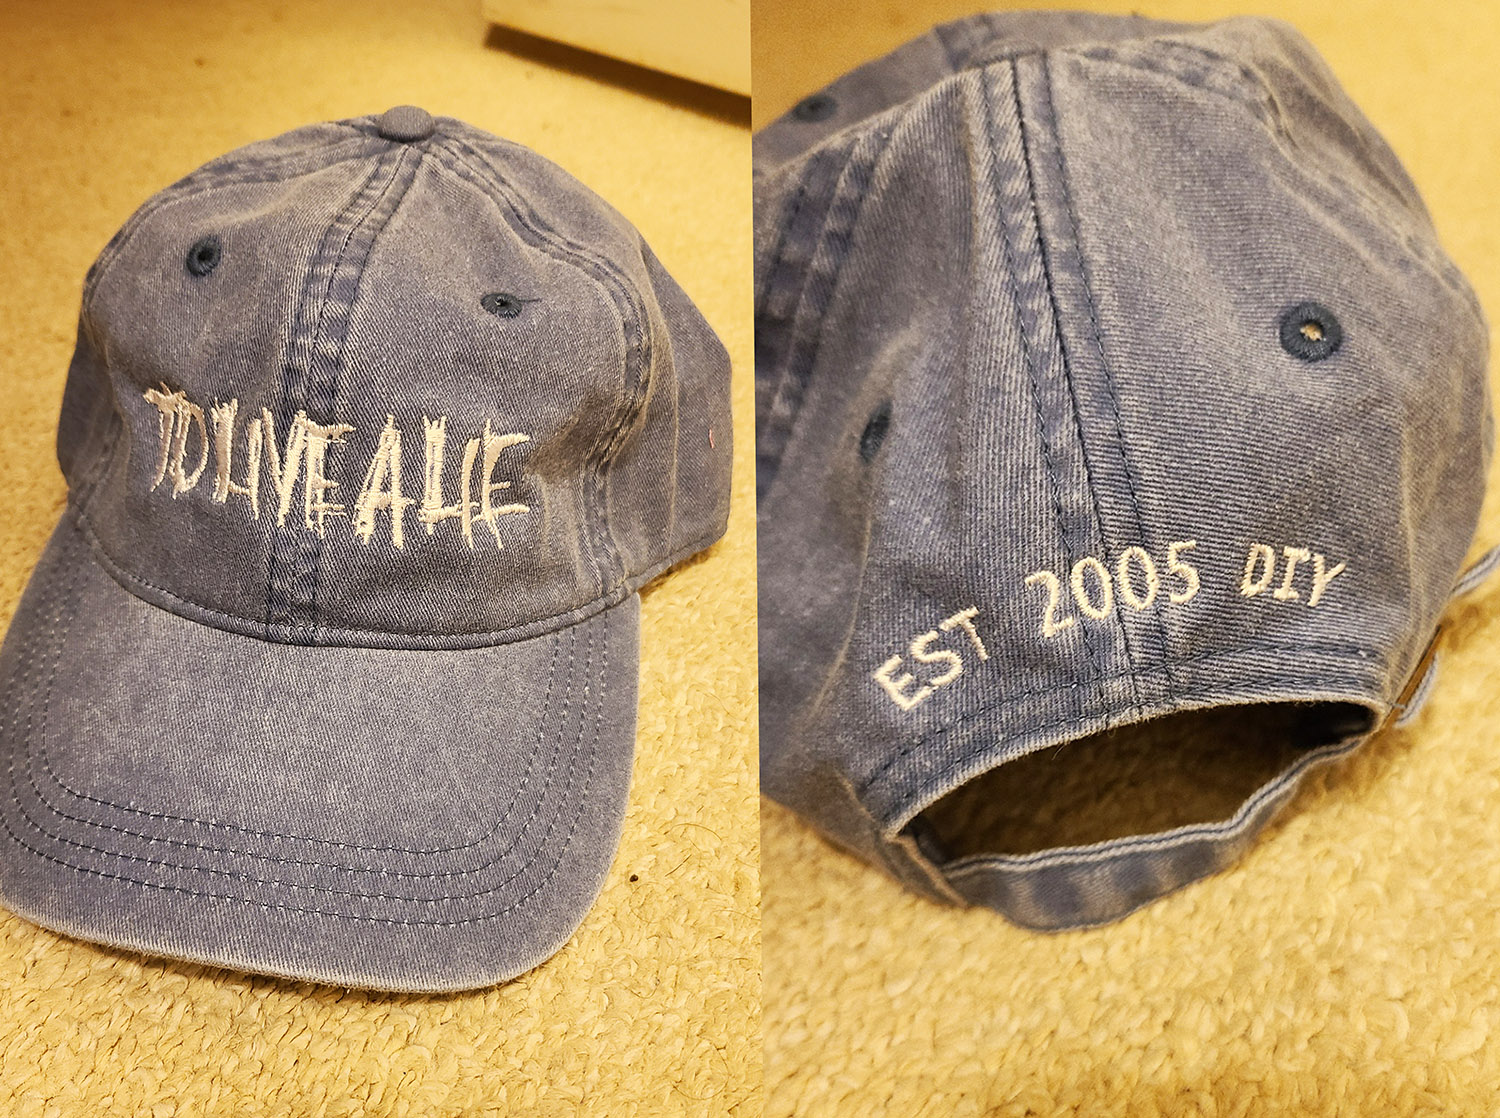 To Live A Lie - Since 2005 DIY Adjustable Dad Hats (denim)